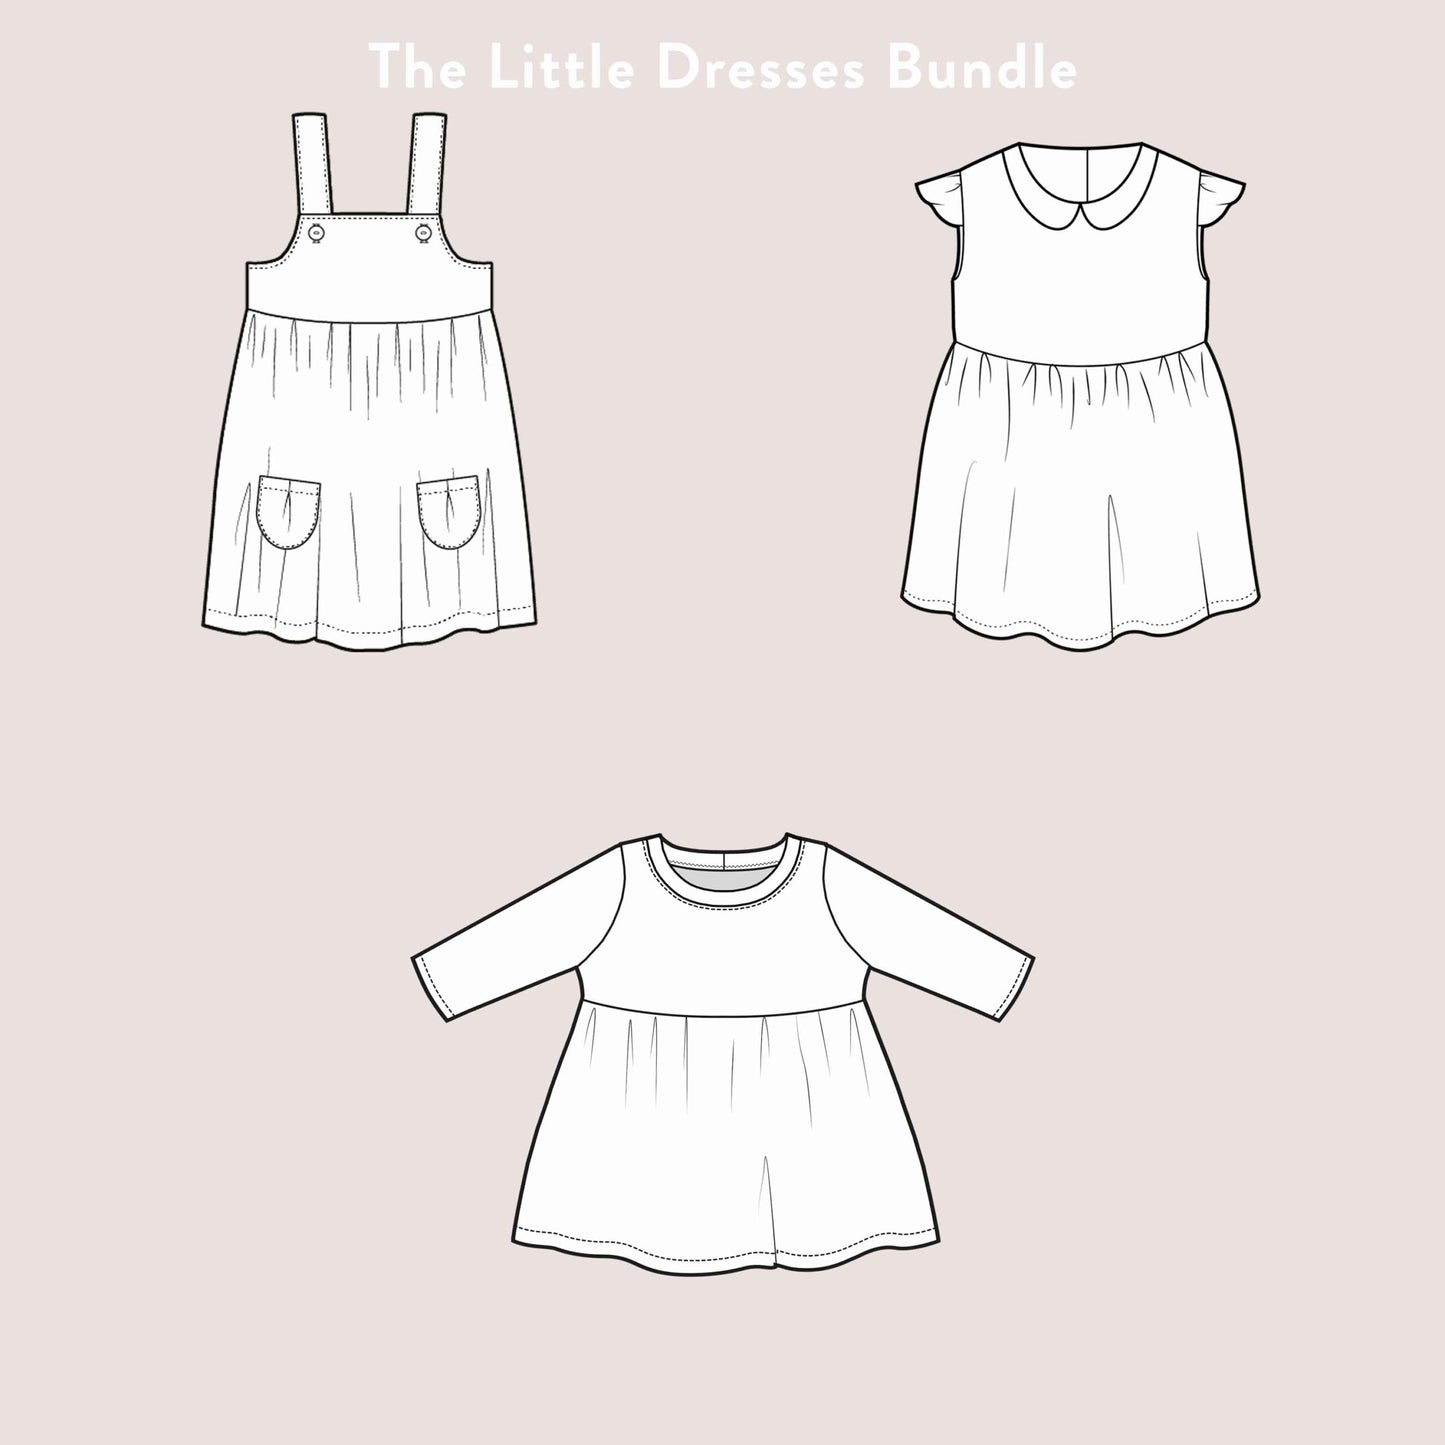 The Little Dresses Bundle